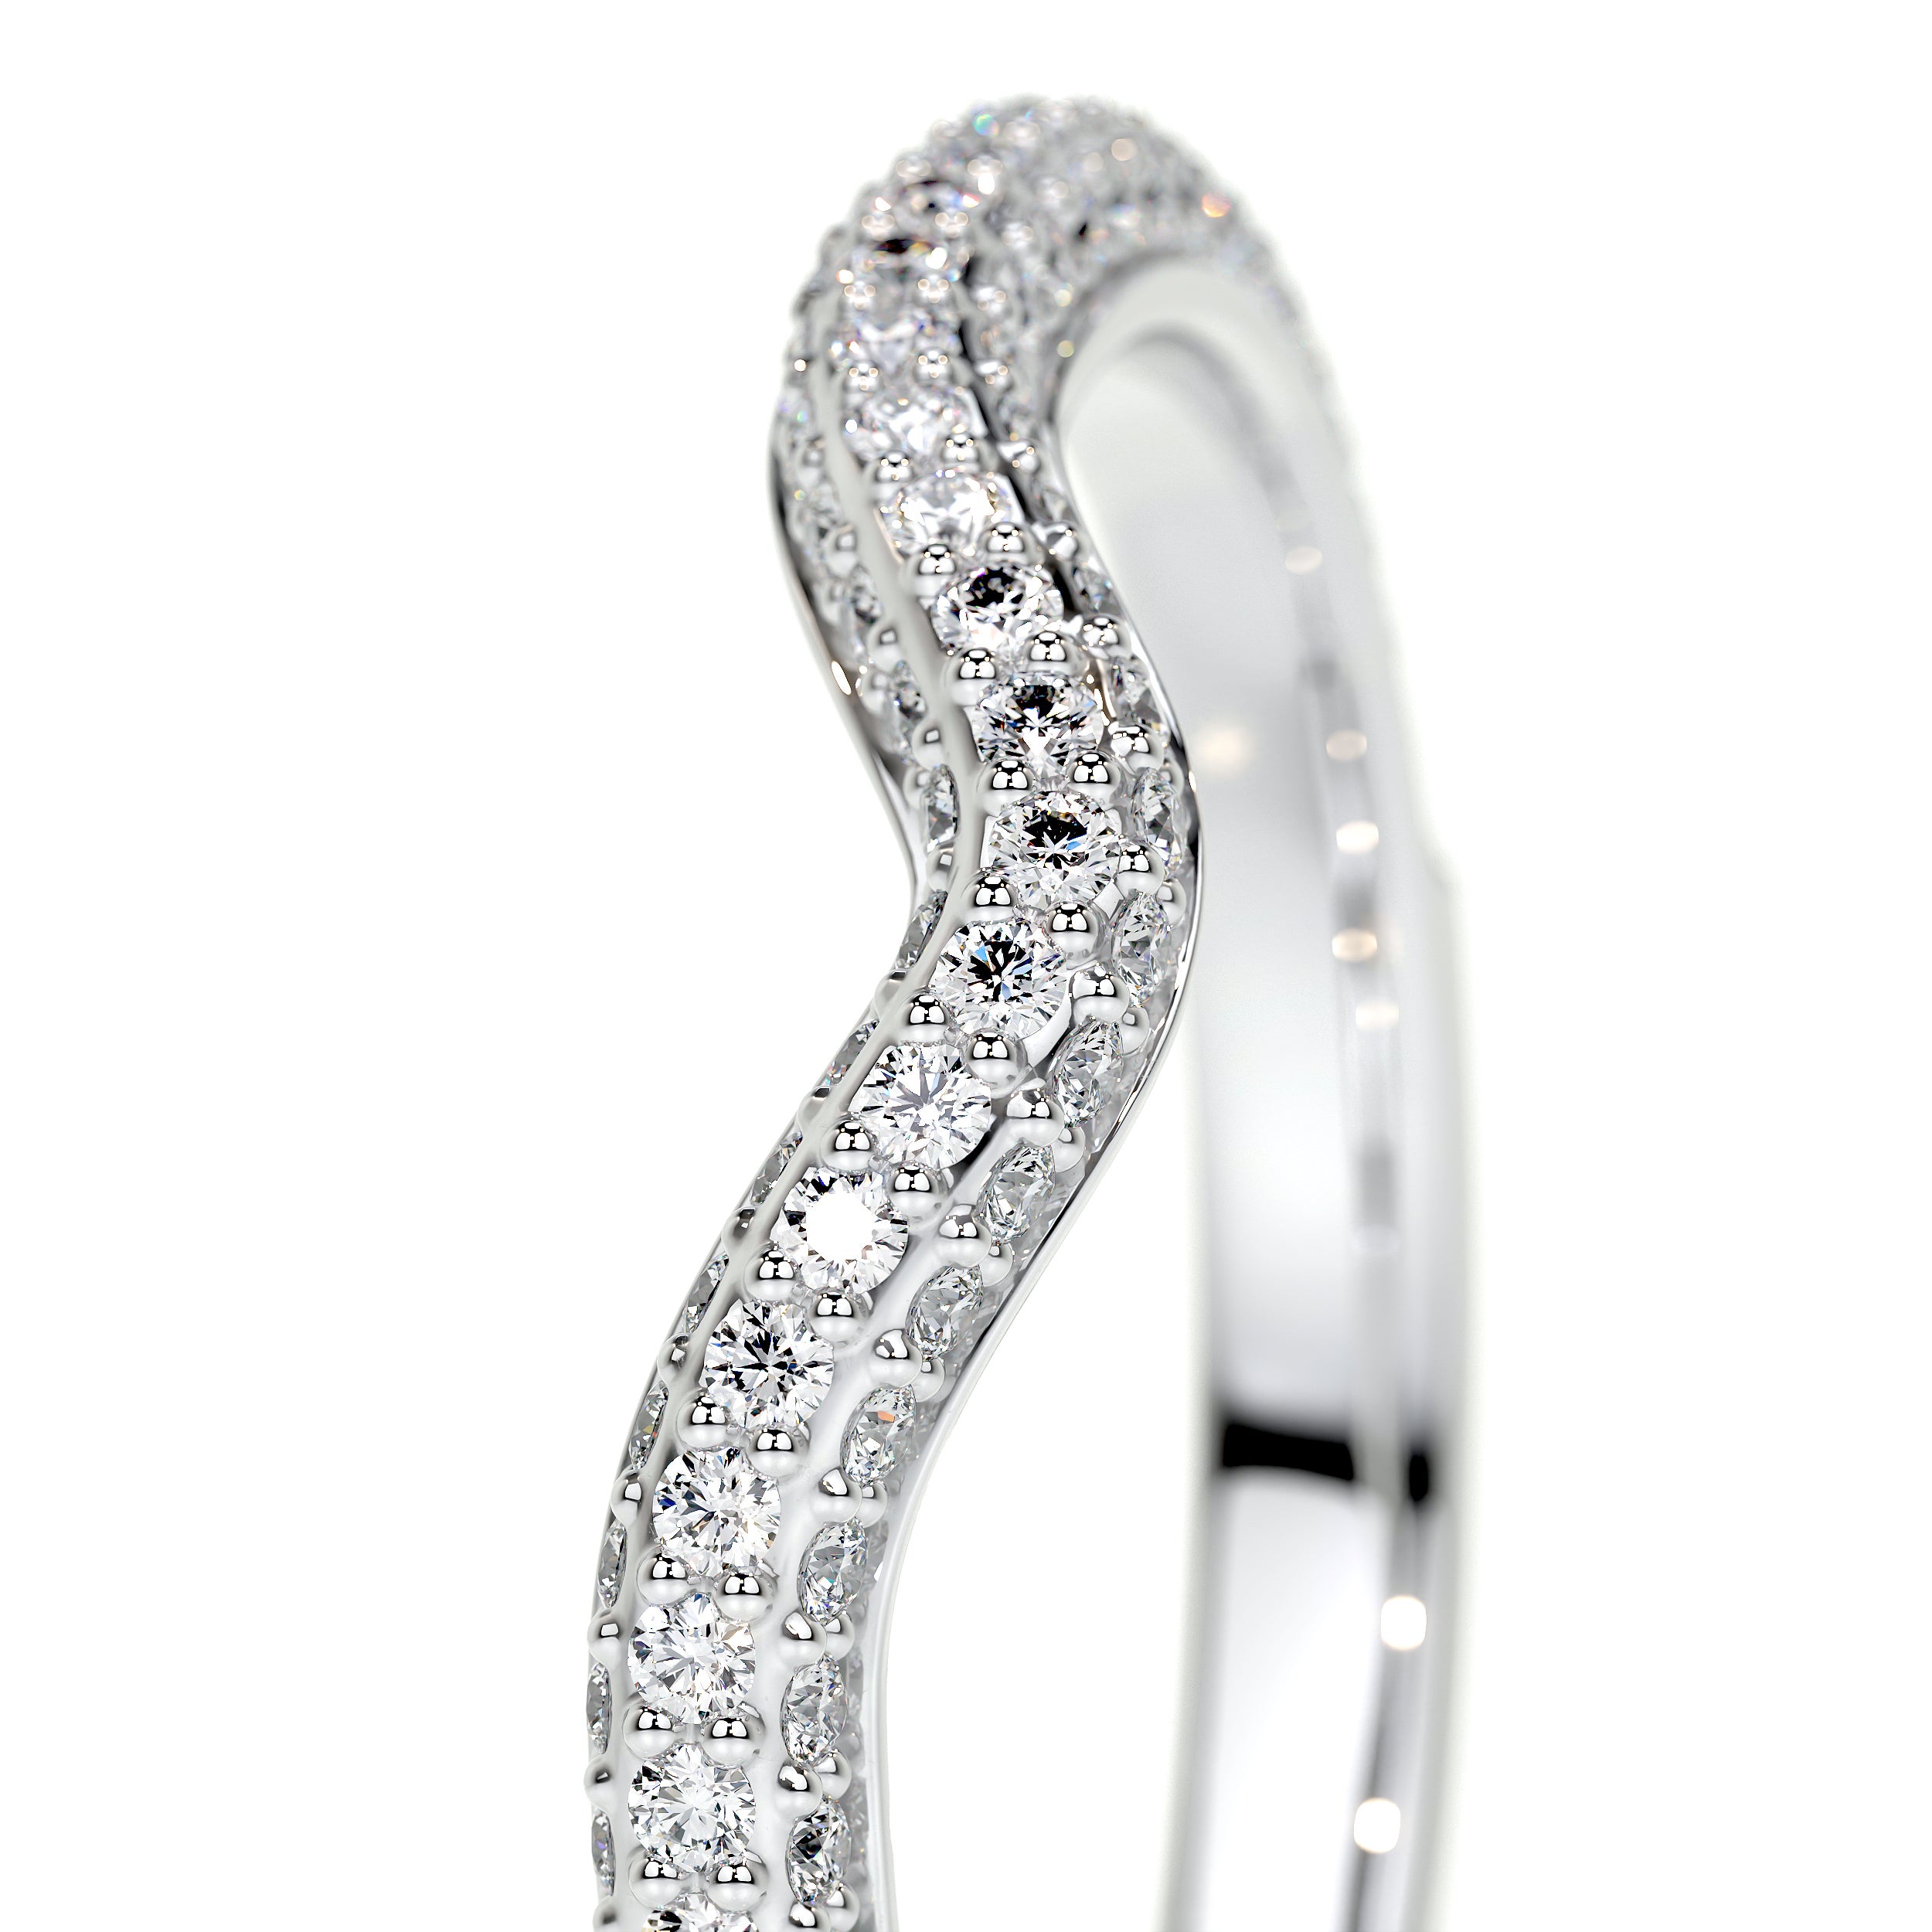 Anastasia Lab Grown Curved Wedding Ring   (0.75 Carat) -18K White Gold